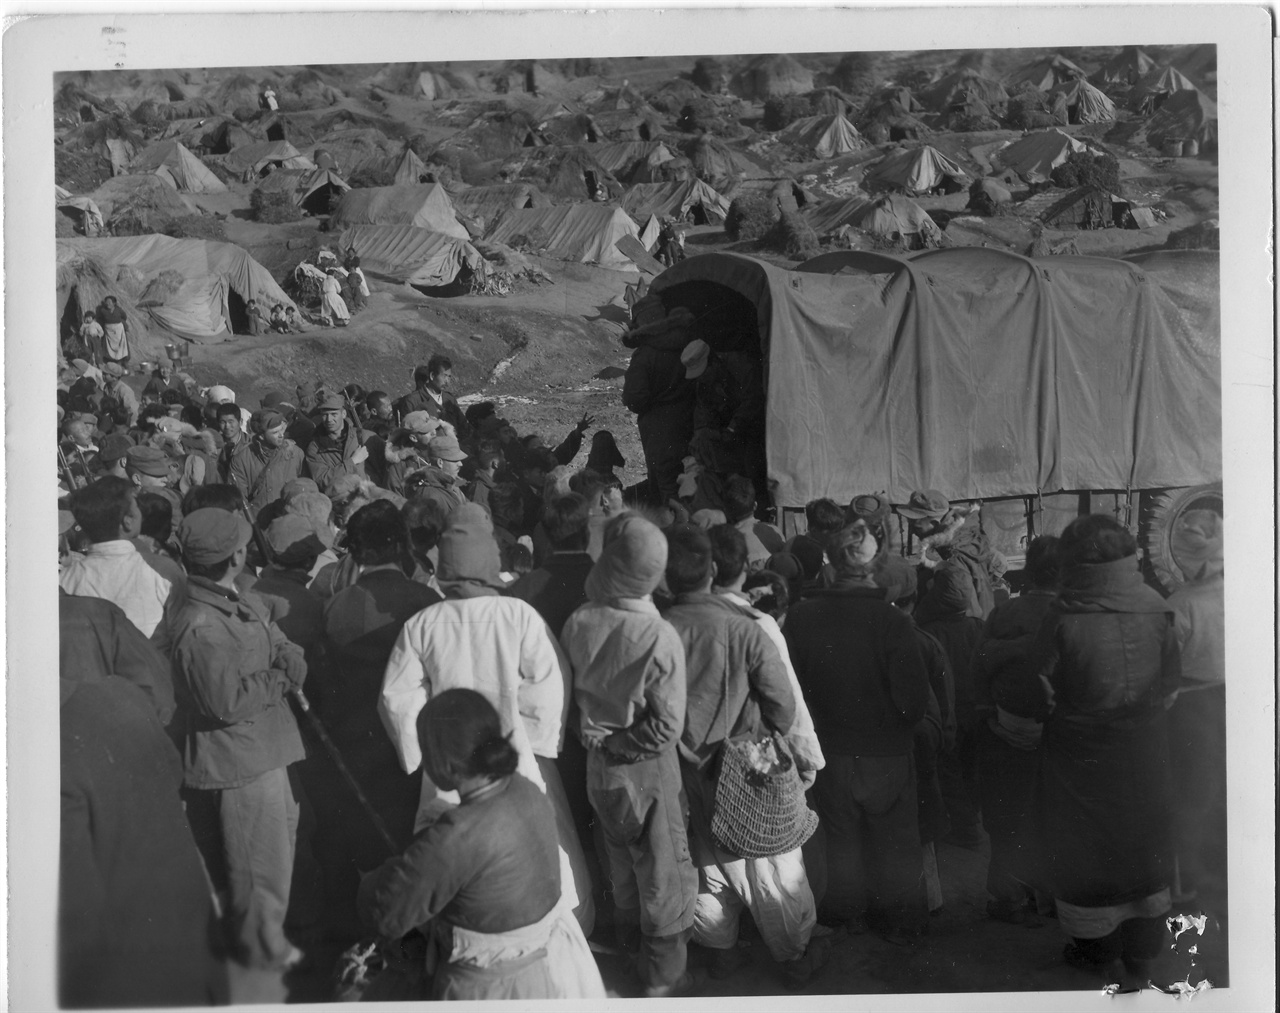 1953. 1. 29. 파주 금촌, 피란민촌에 미군 구호차가 오자 피란민들이 몰려들고 있다.